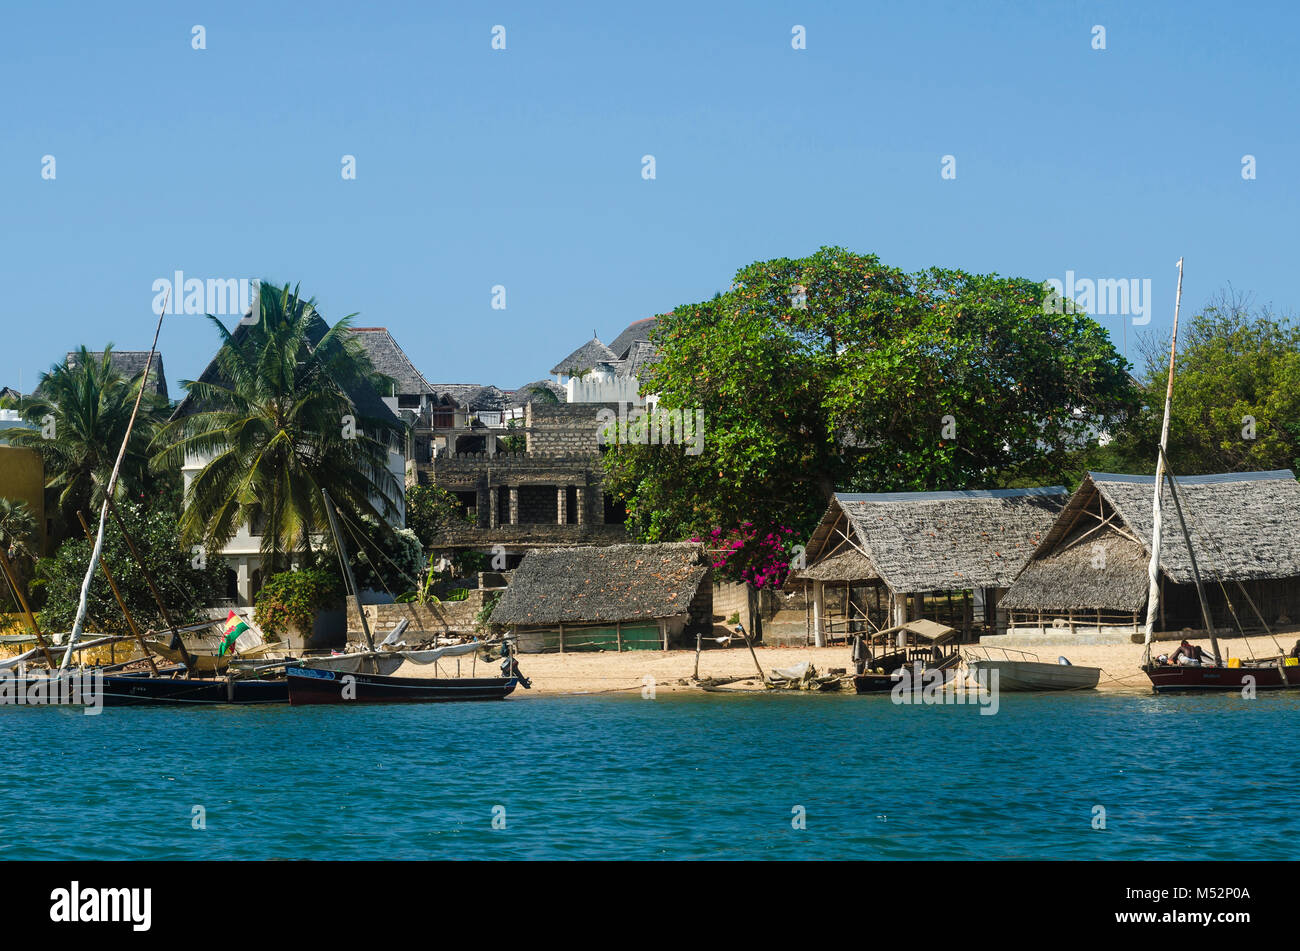 Tradizionali Swahili-stile home sull'isola di Lamu Waterfront, con imbarcazioni al ancoraggio nell'acqua nella parte anteriore di essa. Kenya, Africa orientale. Foto Stock